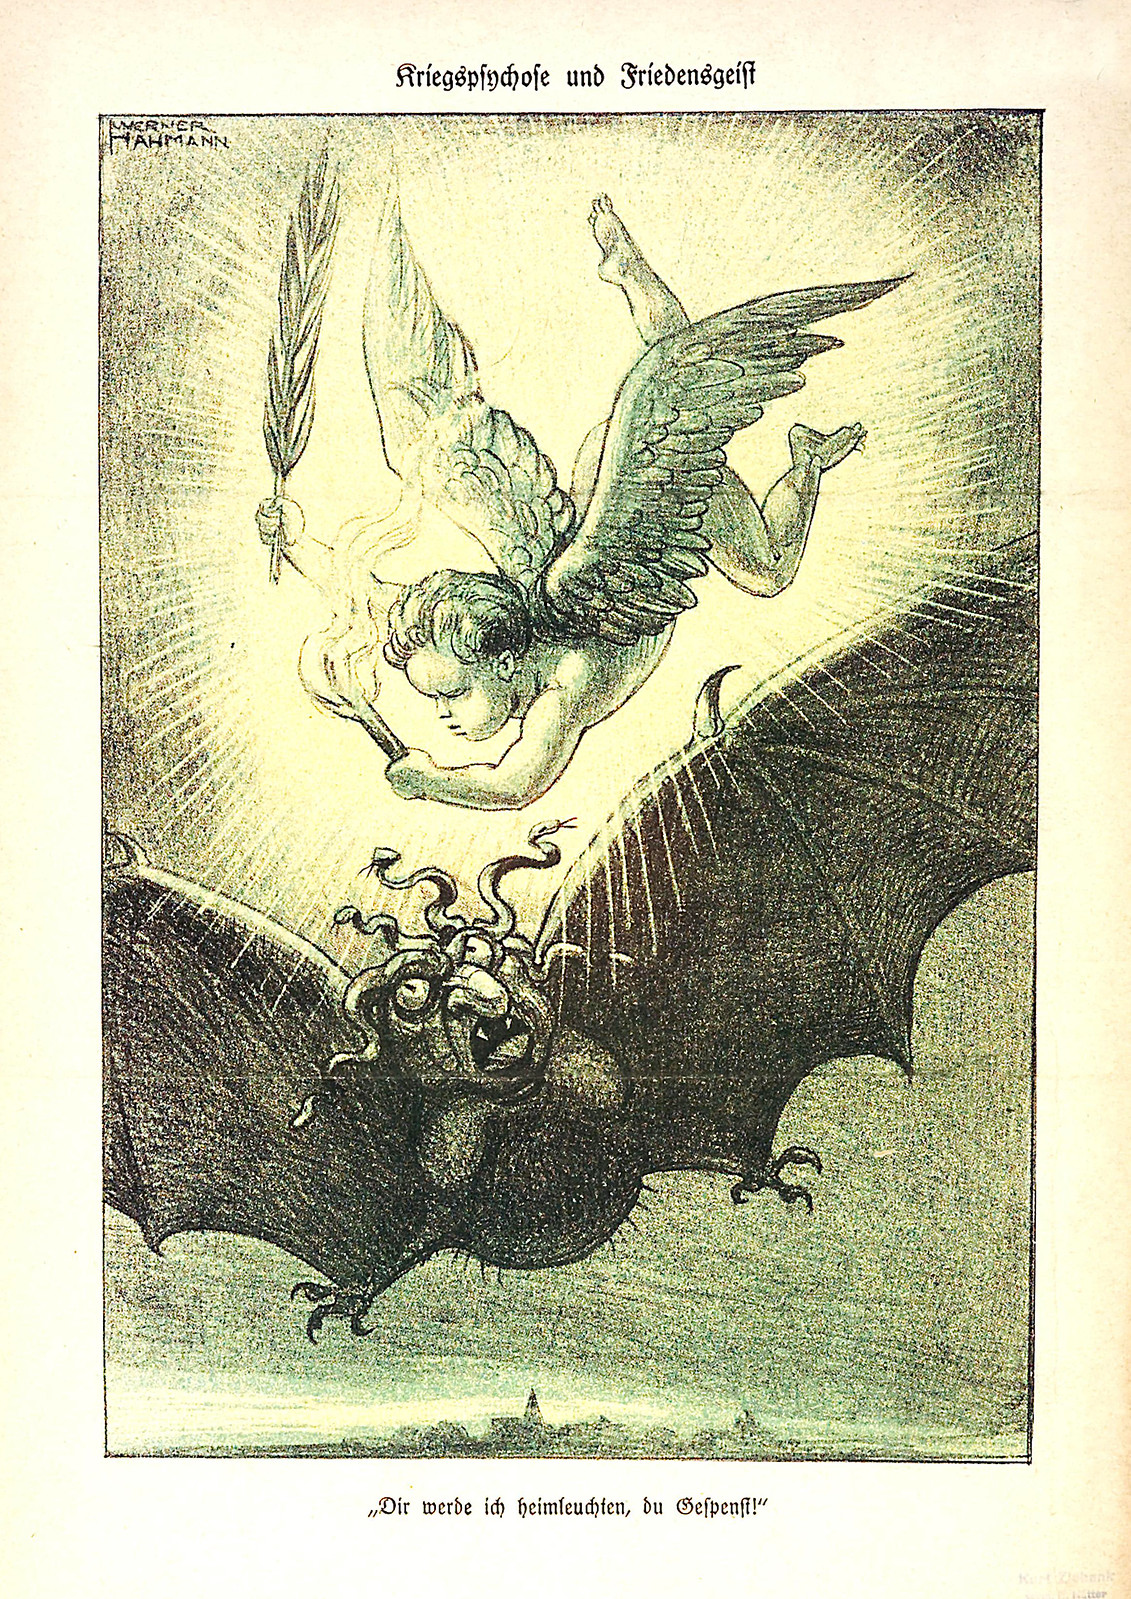 Kladderadatsch, Illustration by Werner Hahmann, 1936